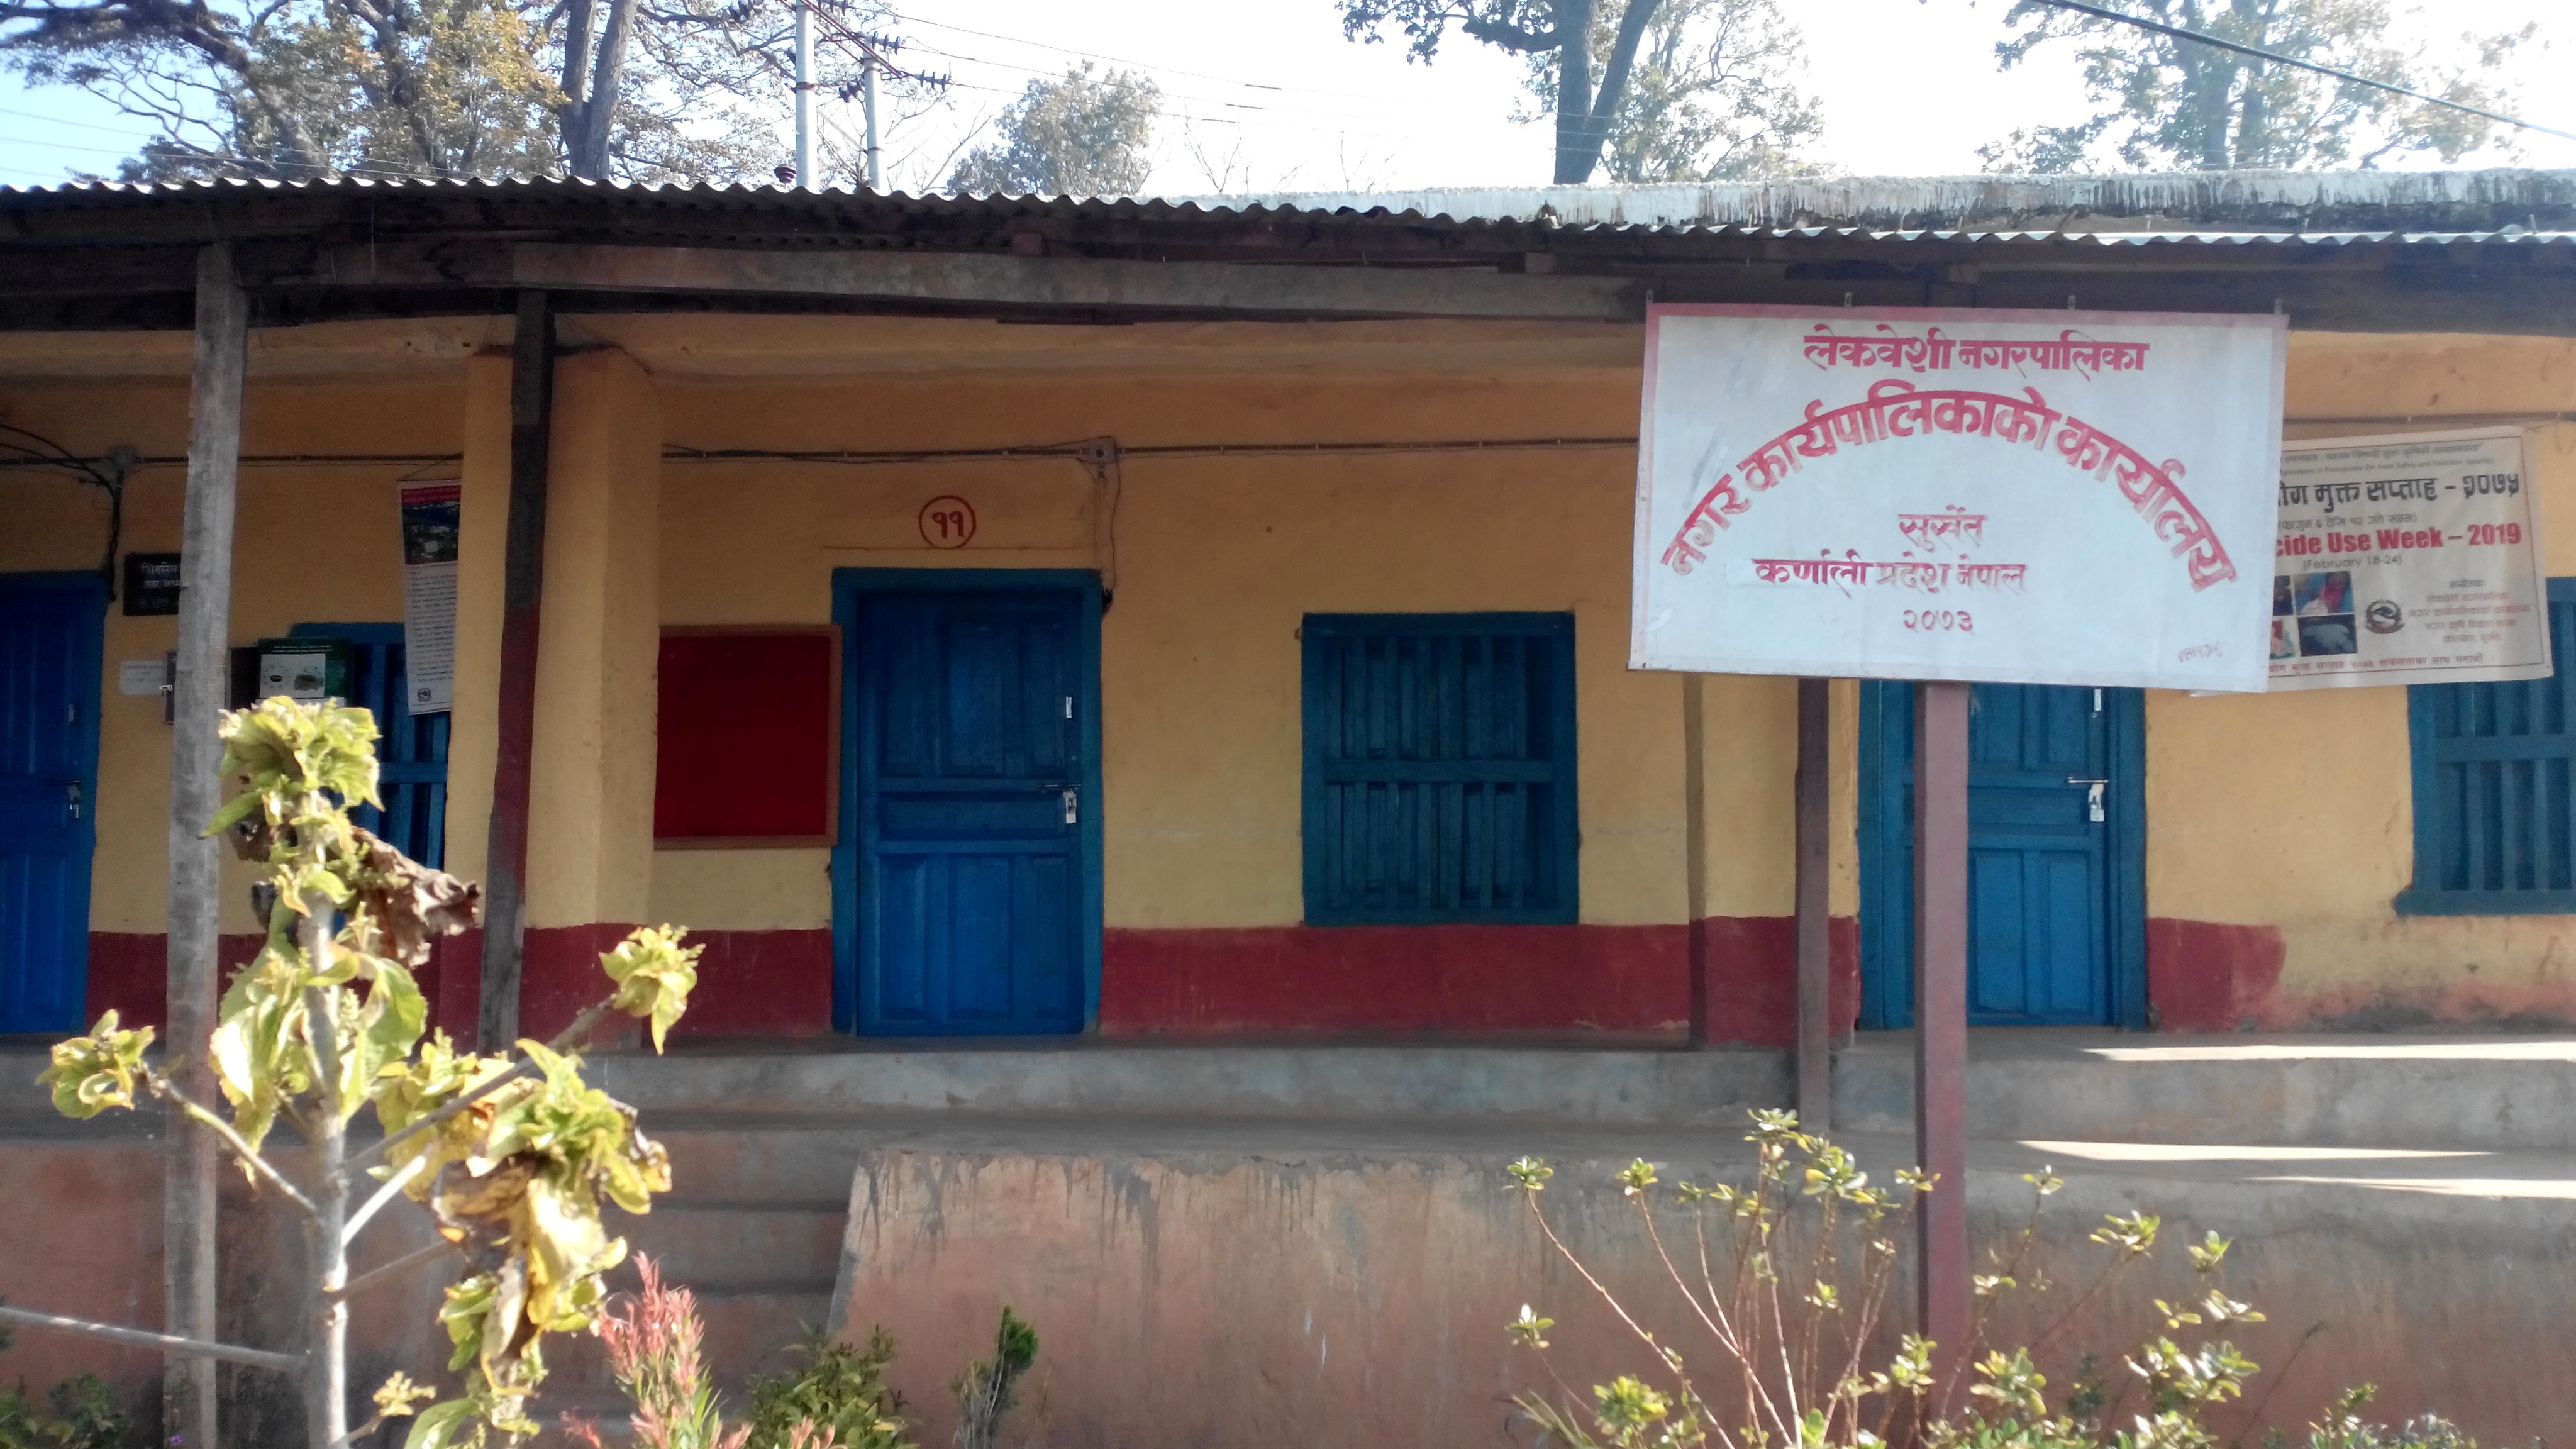 'गाउँका न्यायधीश' अझै अन्योलमा, सर्वसाधारण प्रहरी कार्यालय र अदालत धाउन बाध्य